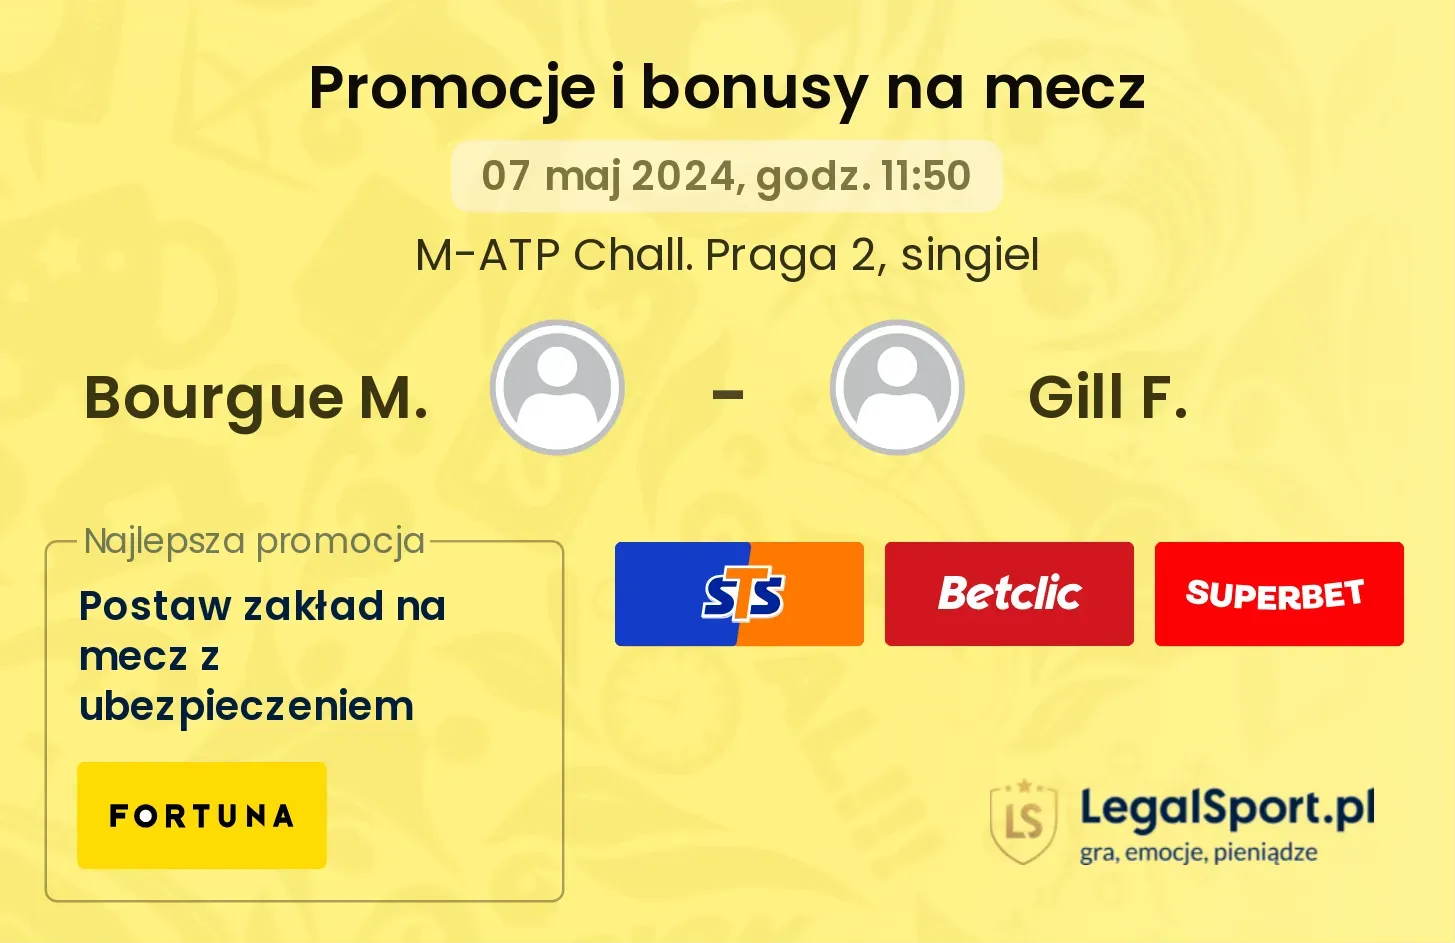 Bourgue M. - Gill F. promocje bonusy na mecz